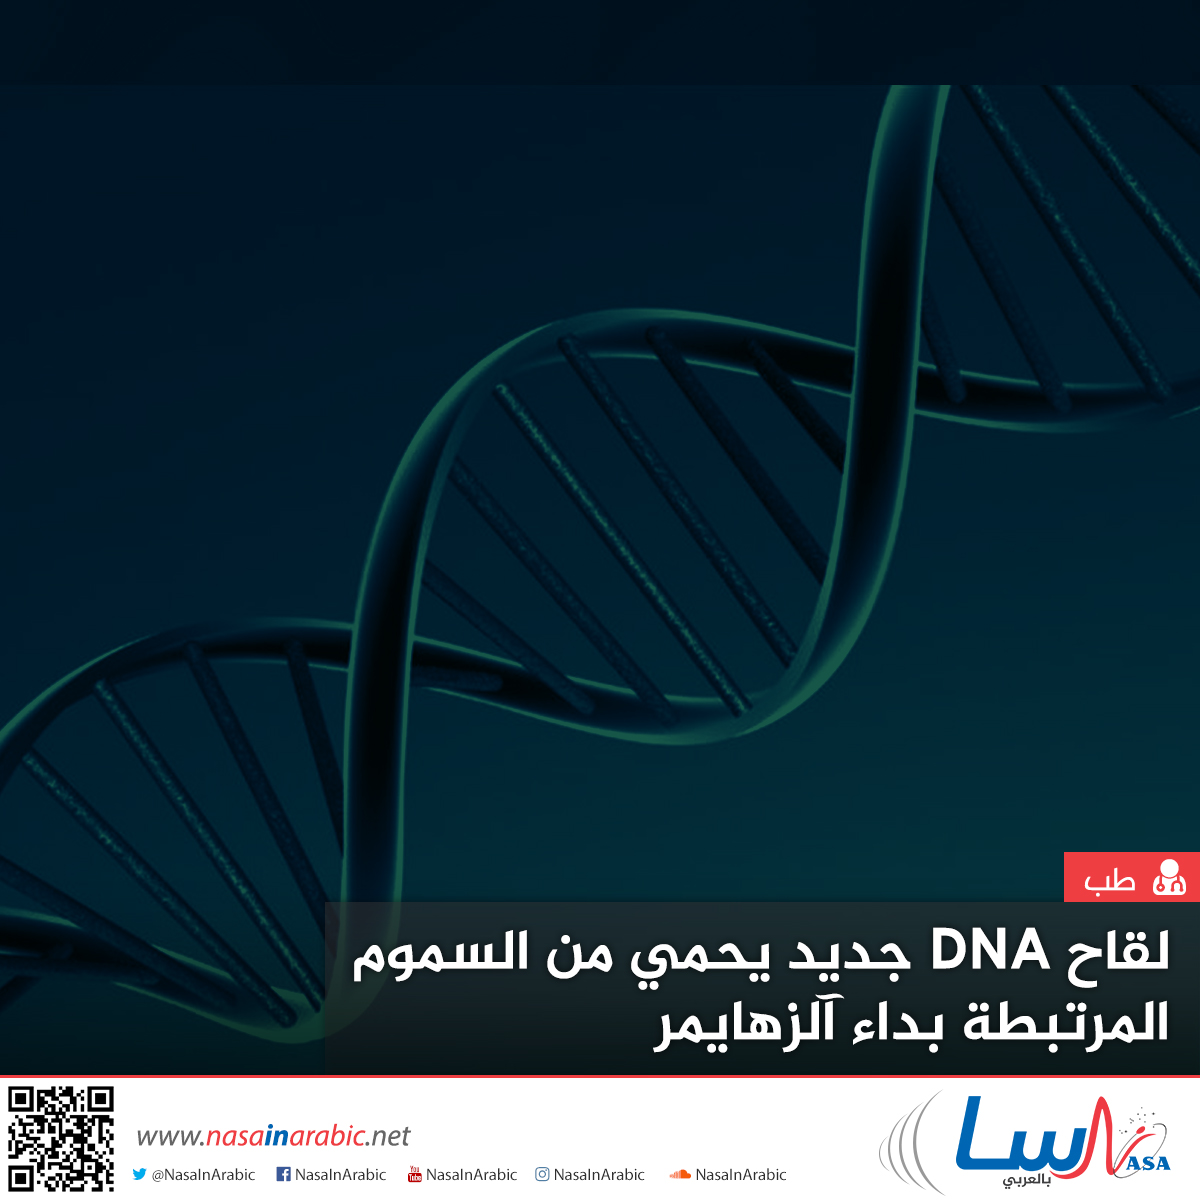 لقاح DNA جديد يحمي من السموم المرتبطة بداء آلزهايمر